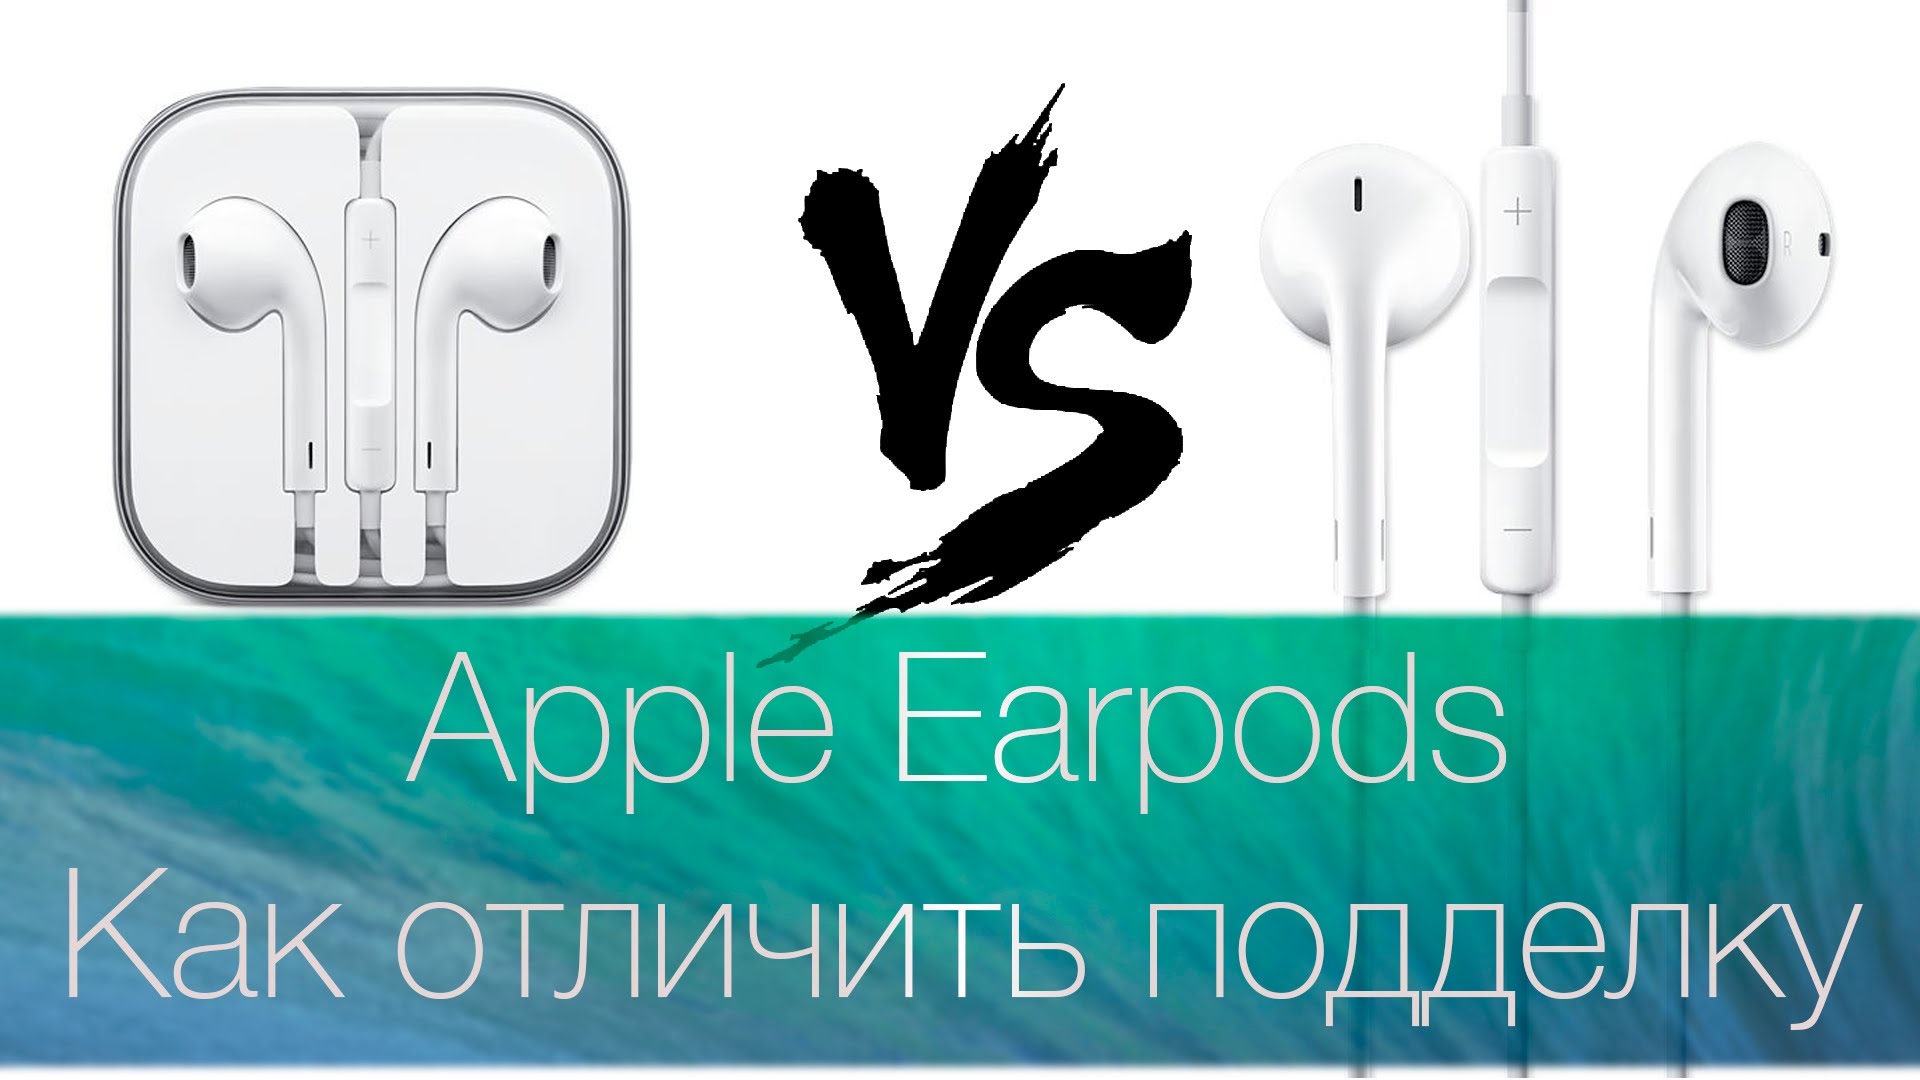 Как отличить подделку apple. Как отличить Earpods. Как отличить Apple Earpods.